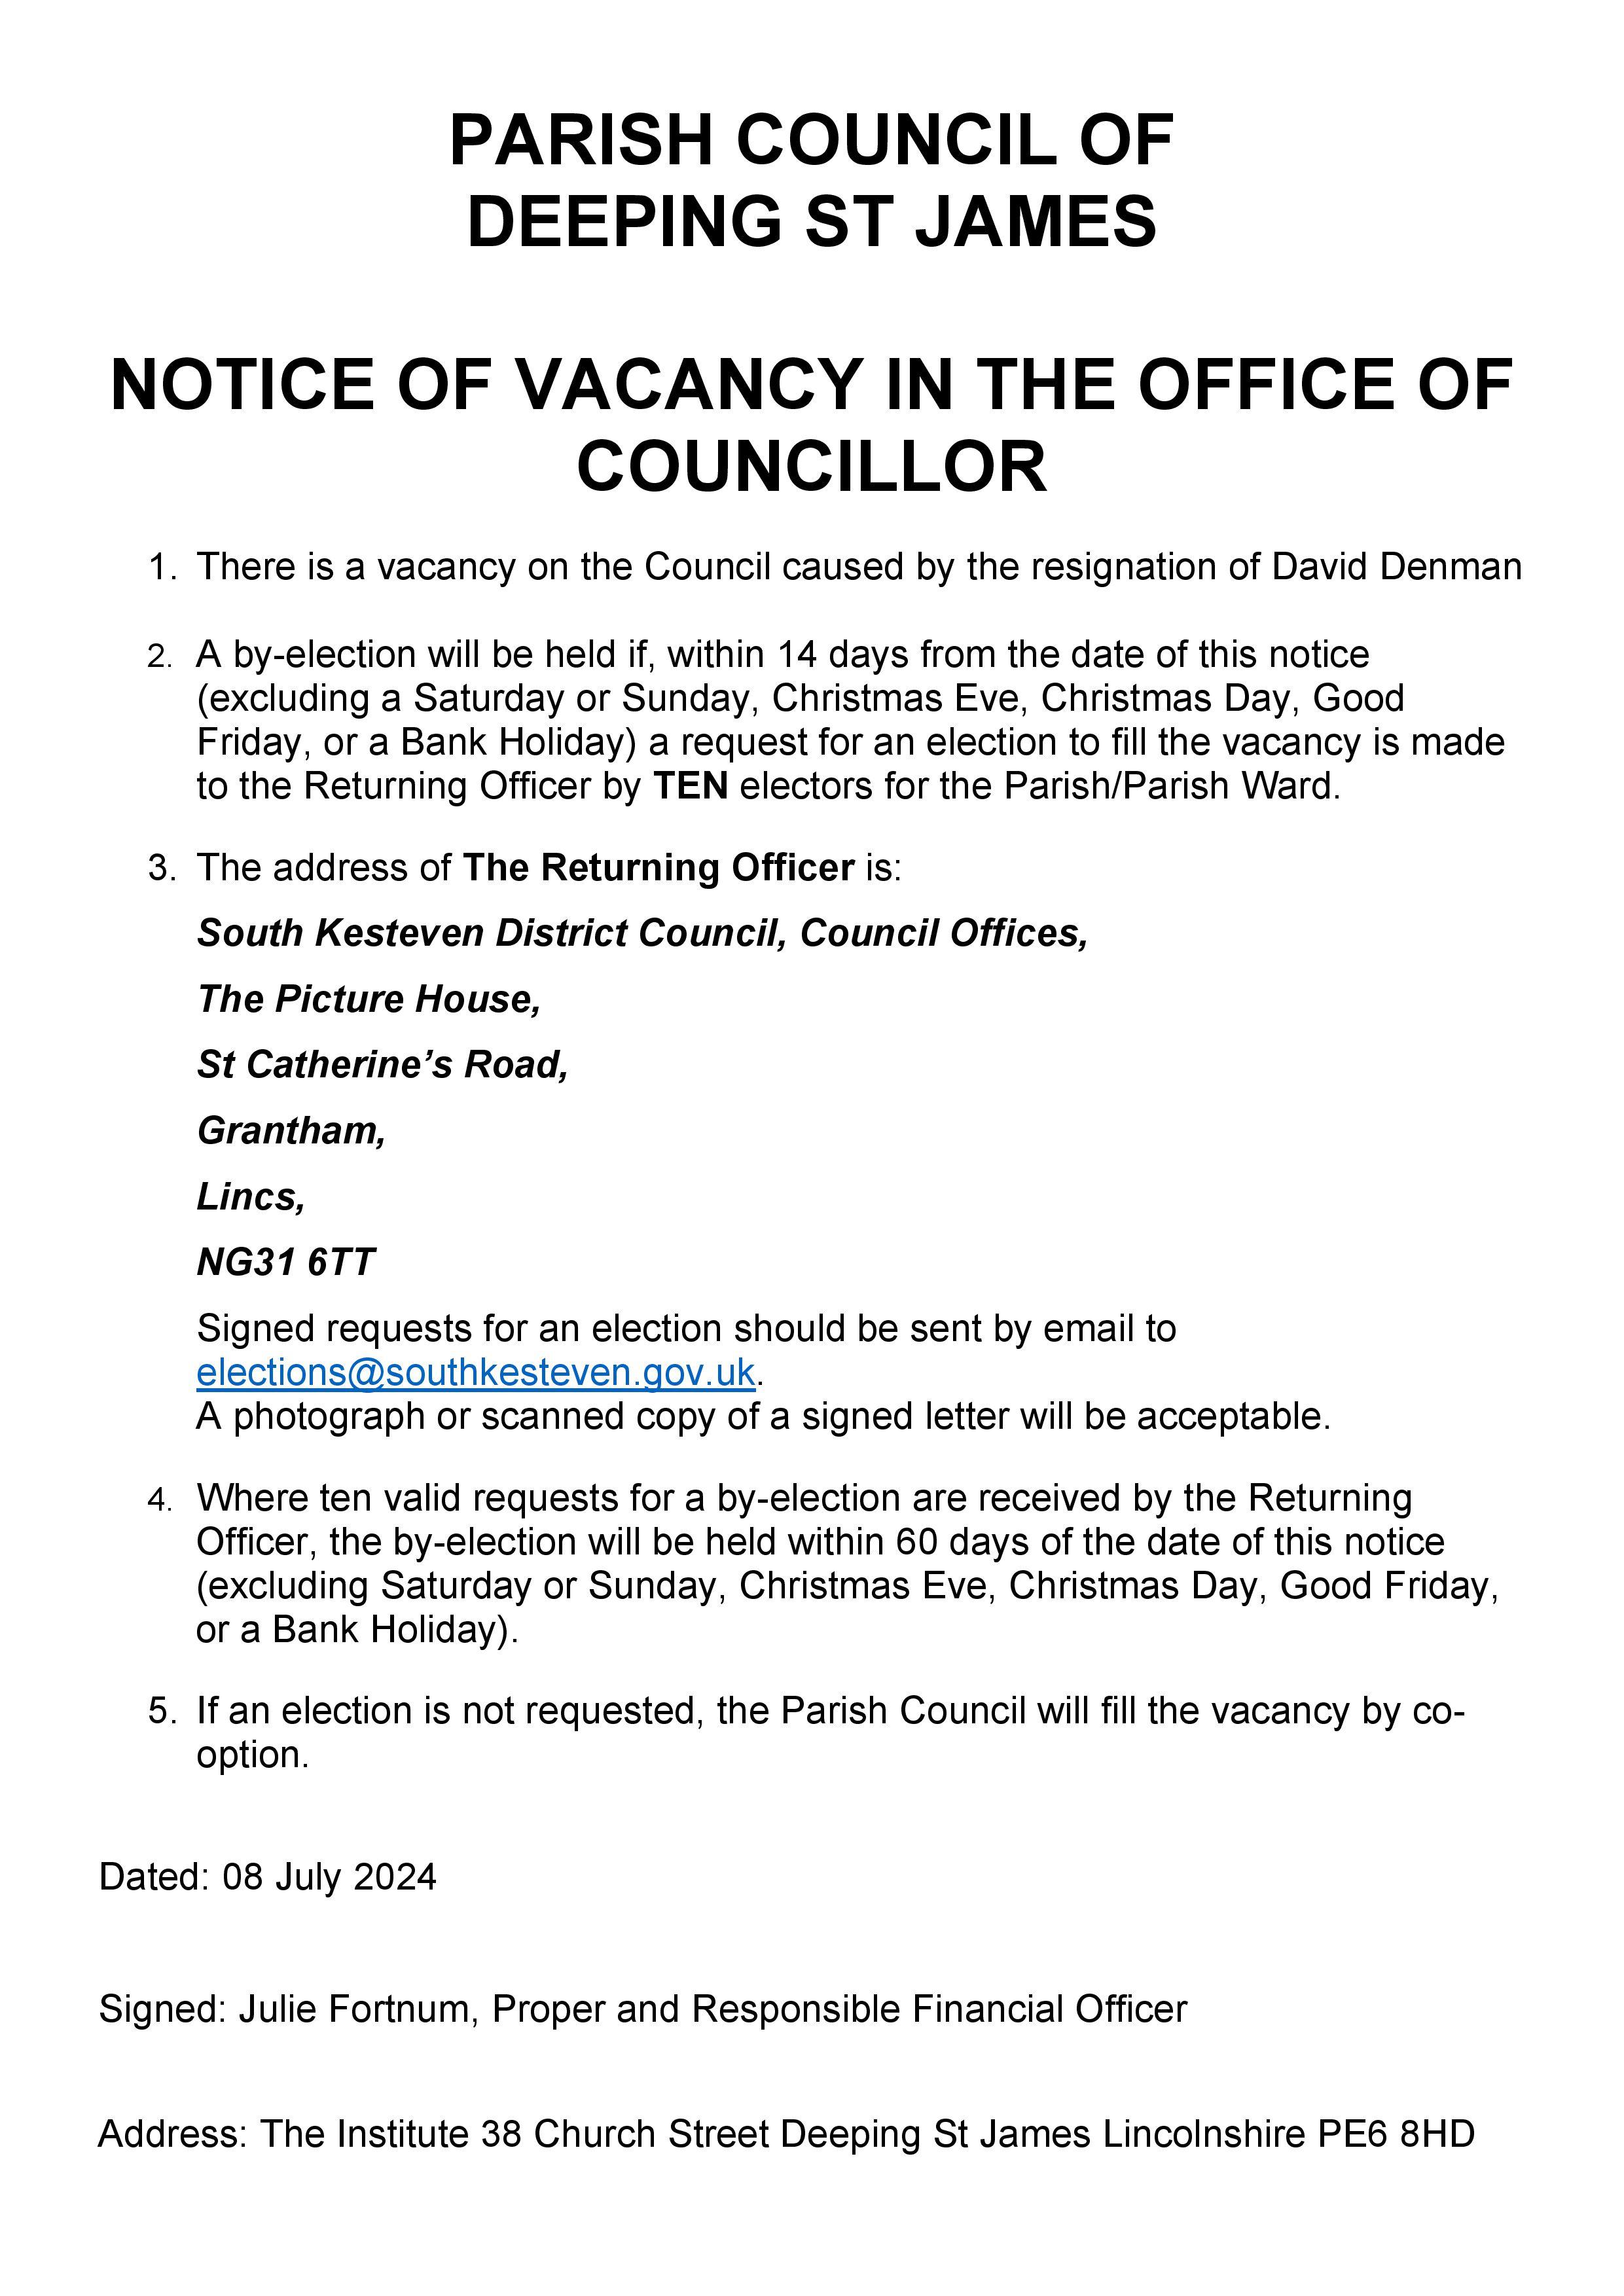 Parish council vacancy notice resignation of david denman